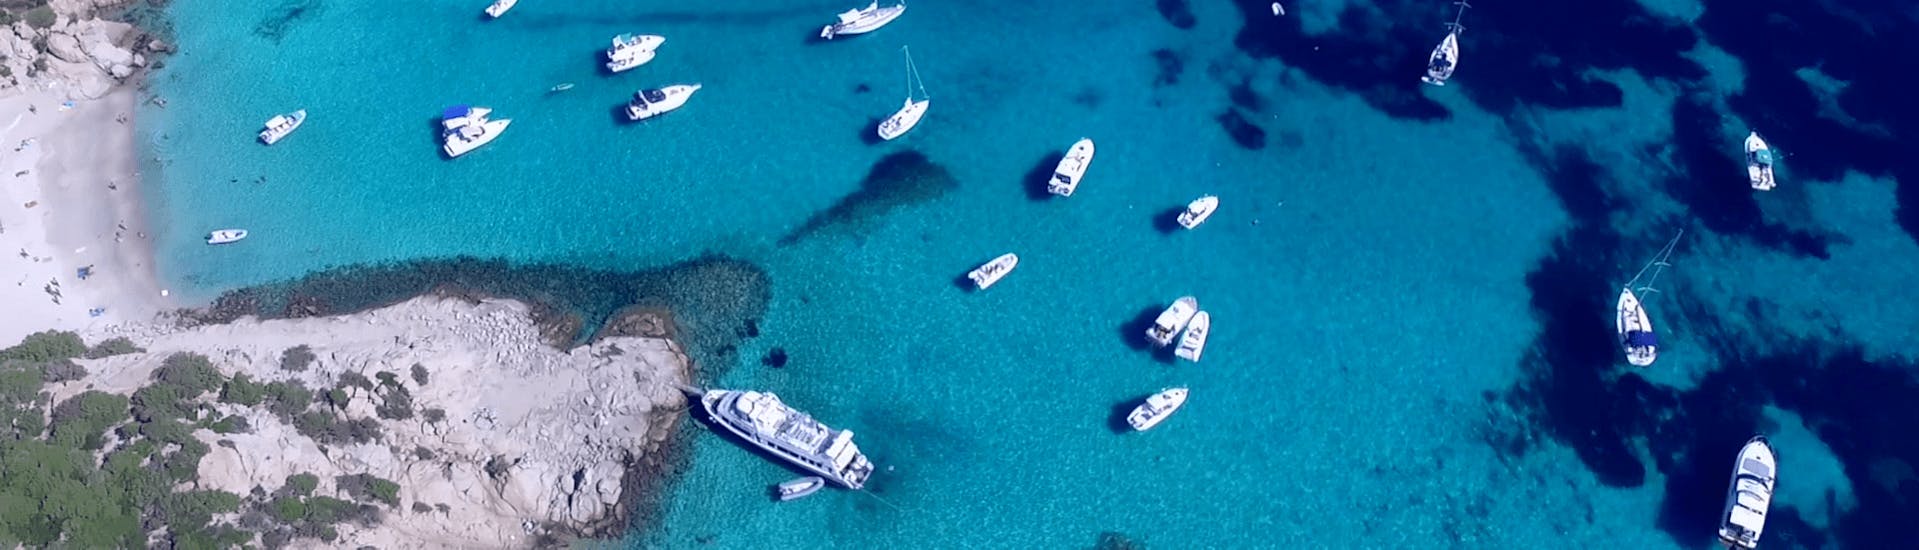 Quelques bateaux s'approchent de l'une des magnifiques plages de Sardaigne pendant l'excursion en bateau de Palau à l'archipel de La Maddalena.